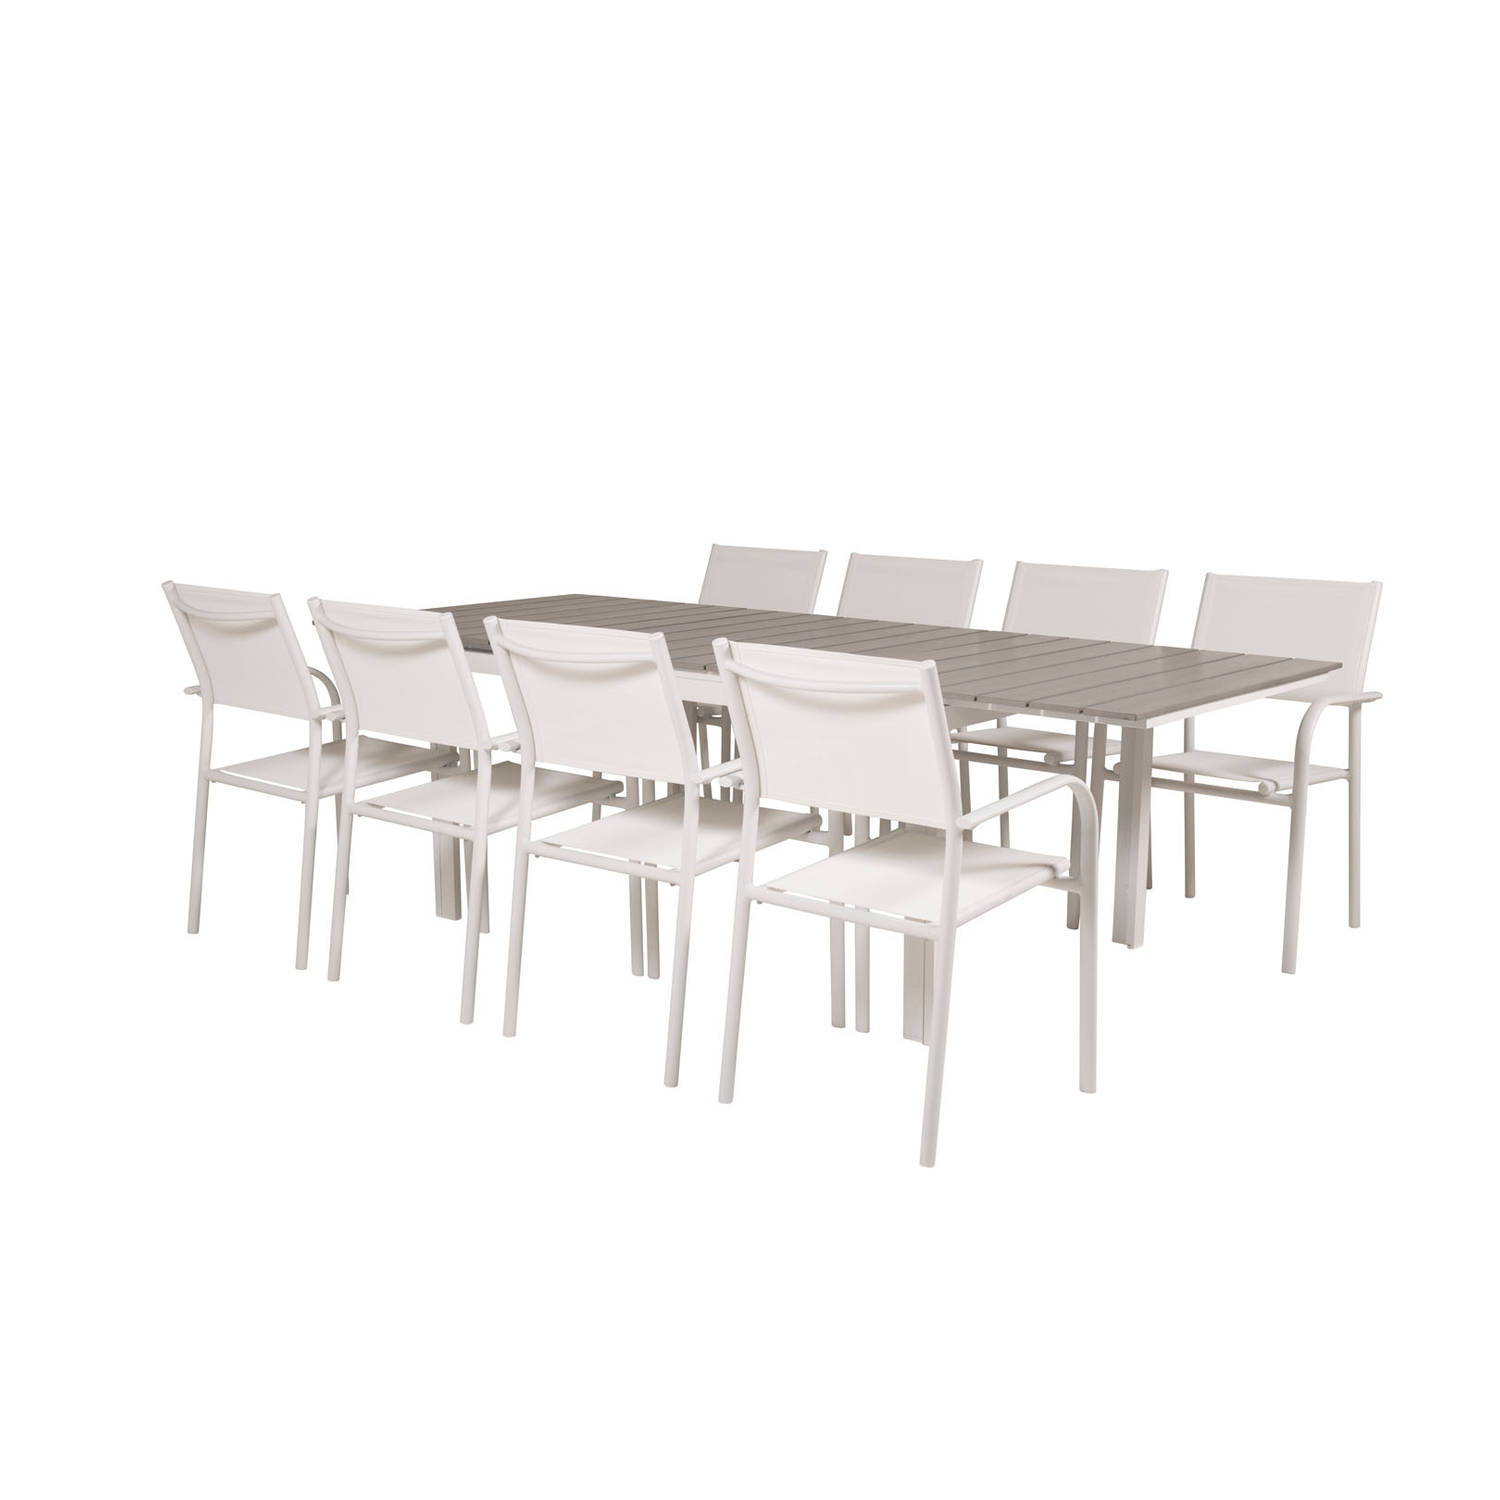 Levels tuinmeubelset tafel 100x160/240cm en 8 stoel Santorini wit, grijs.